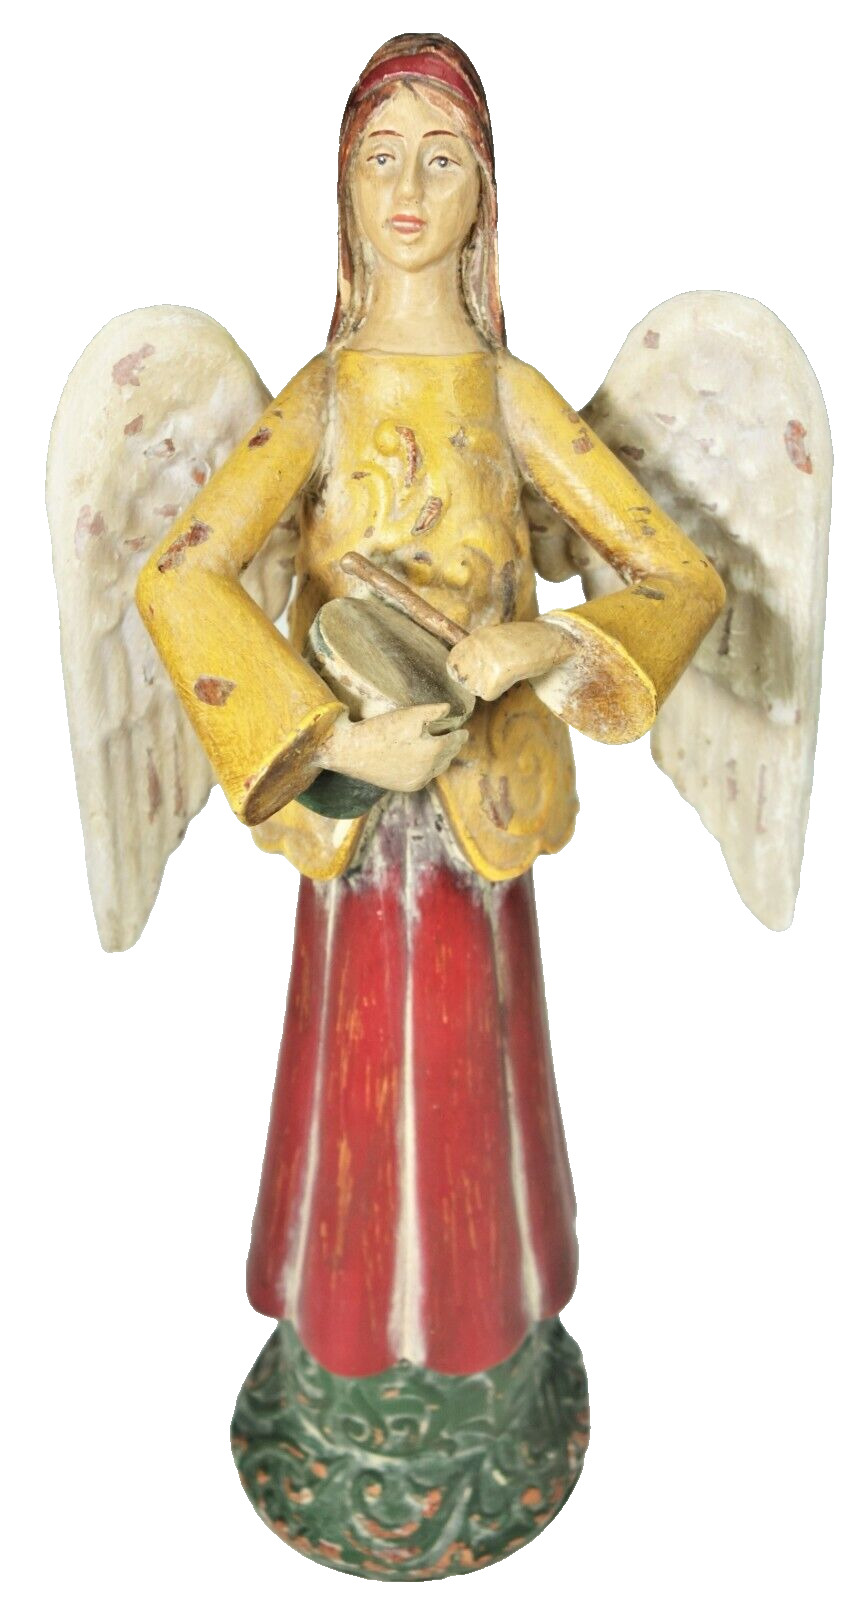 15” Angel Figurine Faux Wood Metal Wings Drum Playing Distressed Folk Art